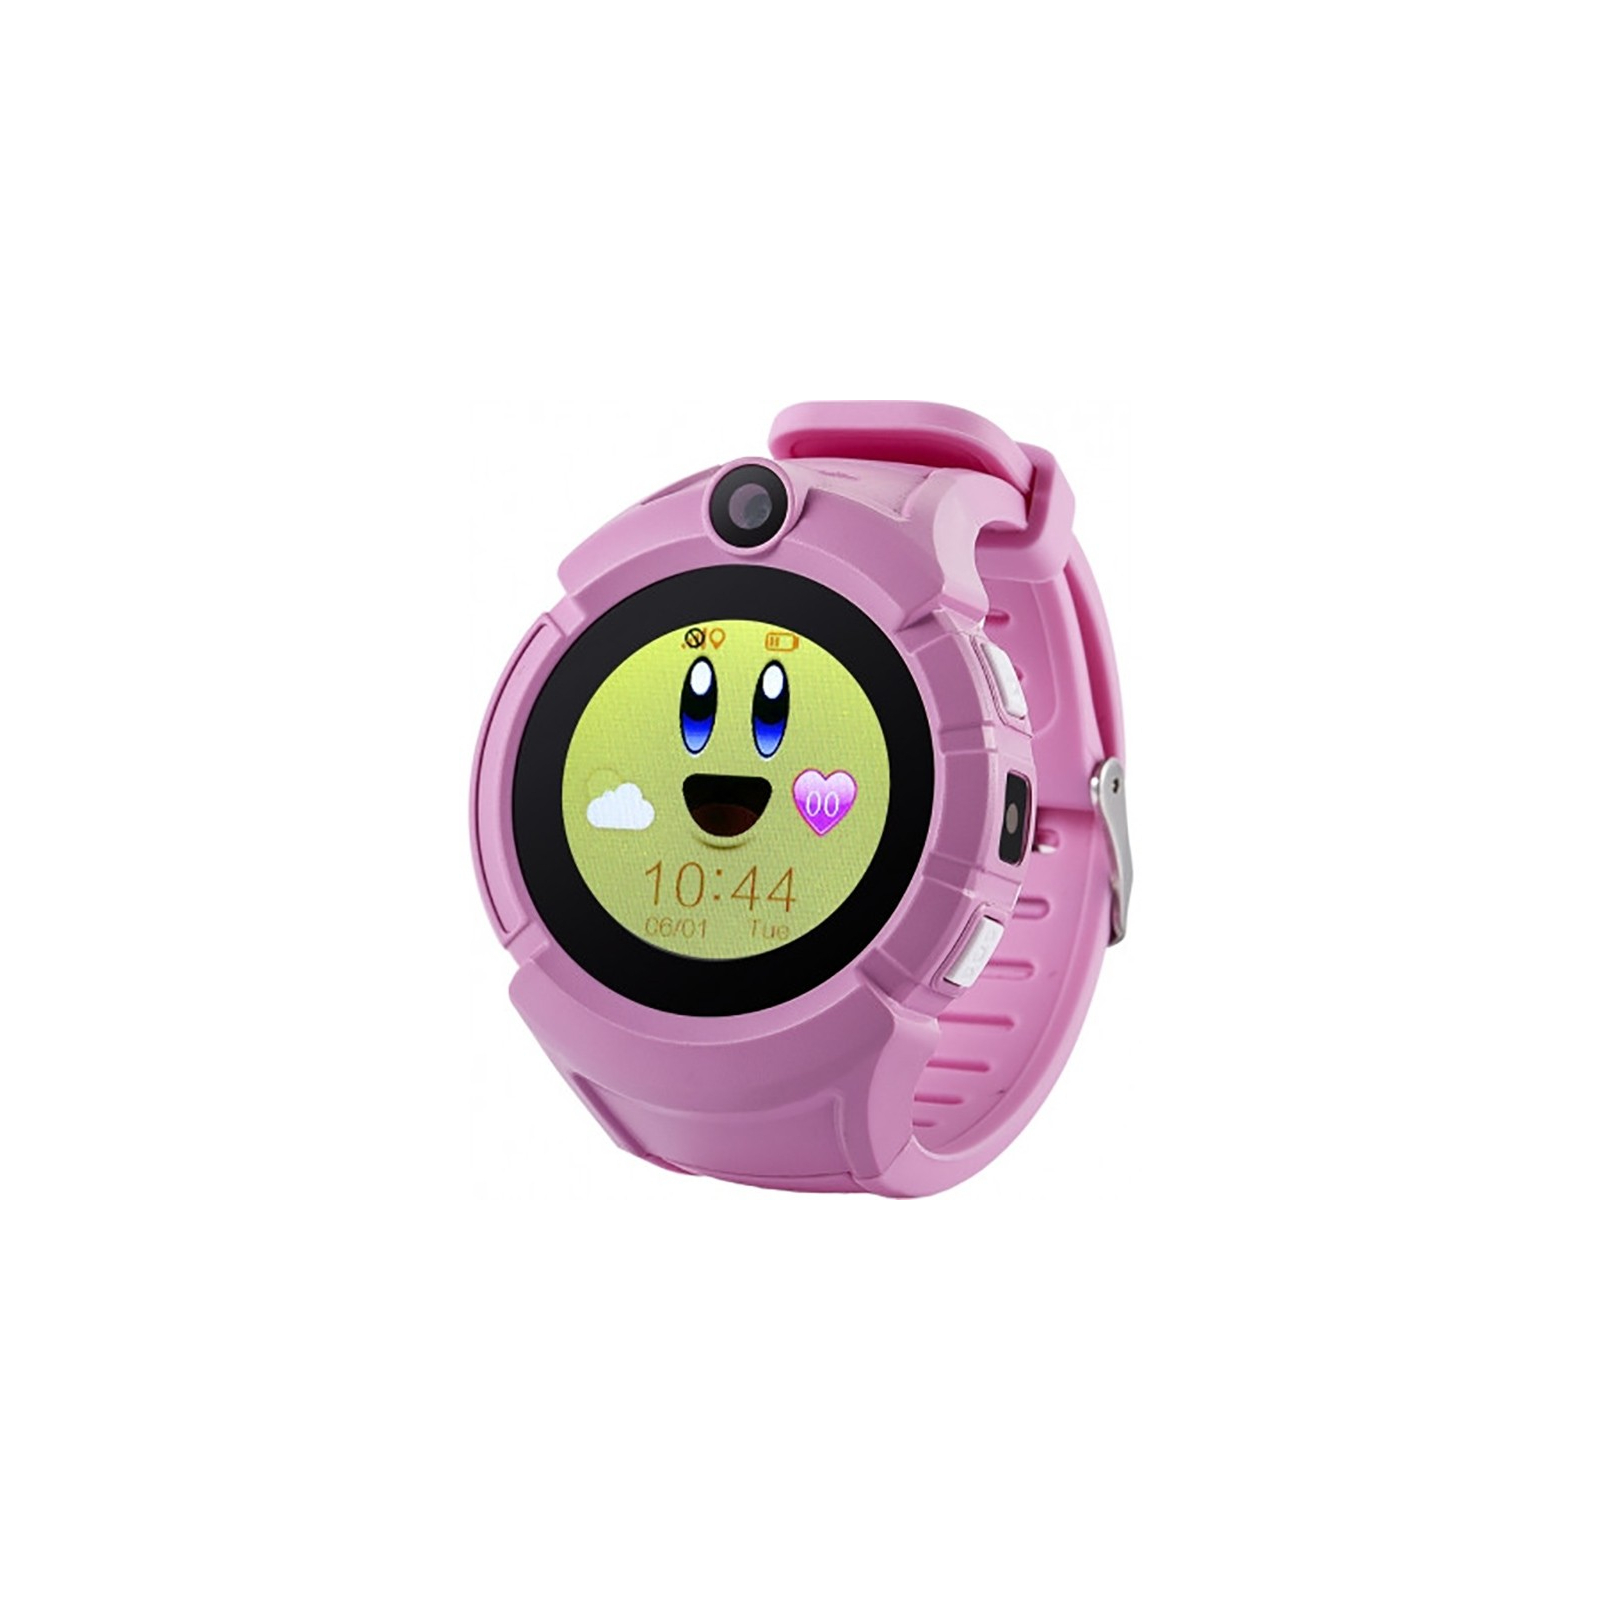 Смарт-часы UWatch GW600 Kid smart watch Black (F_100011)